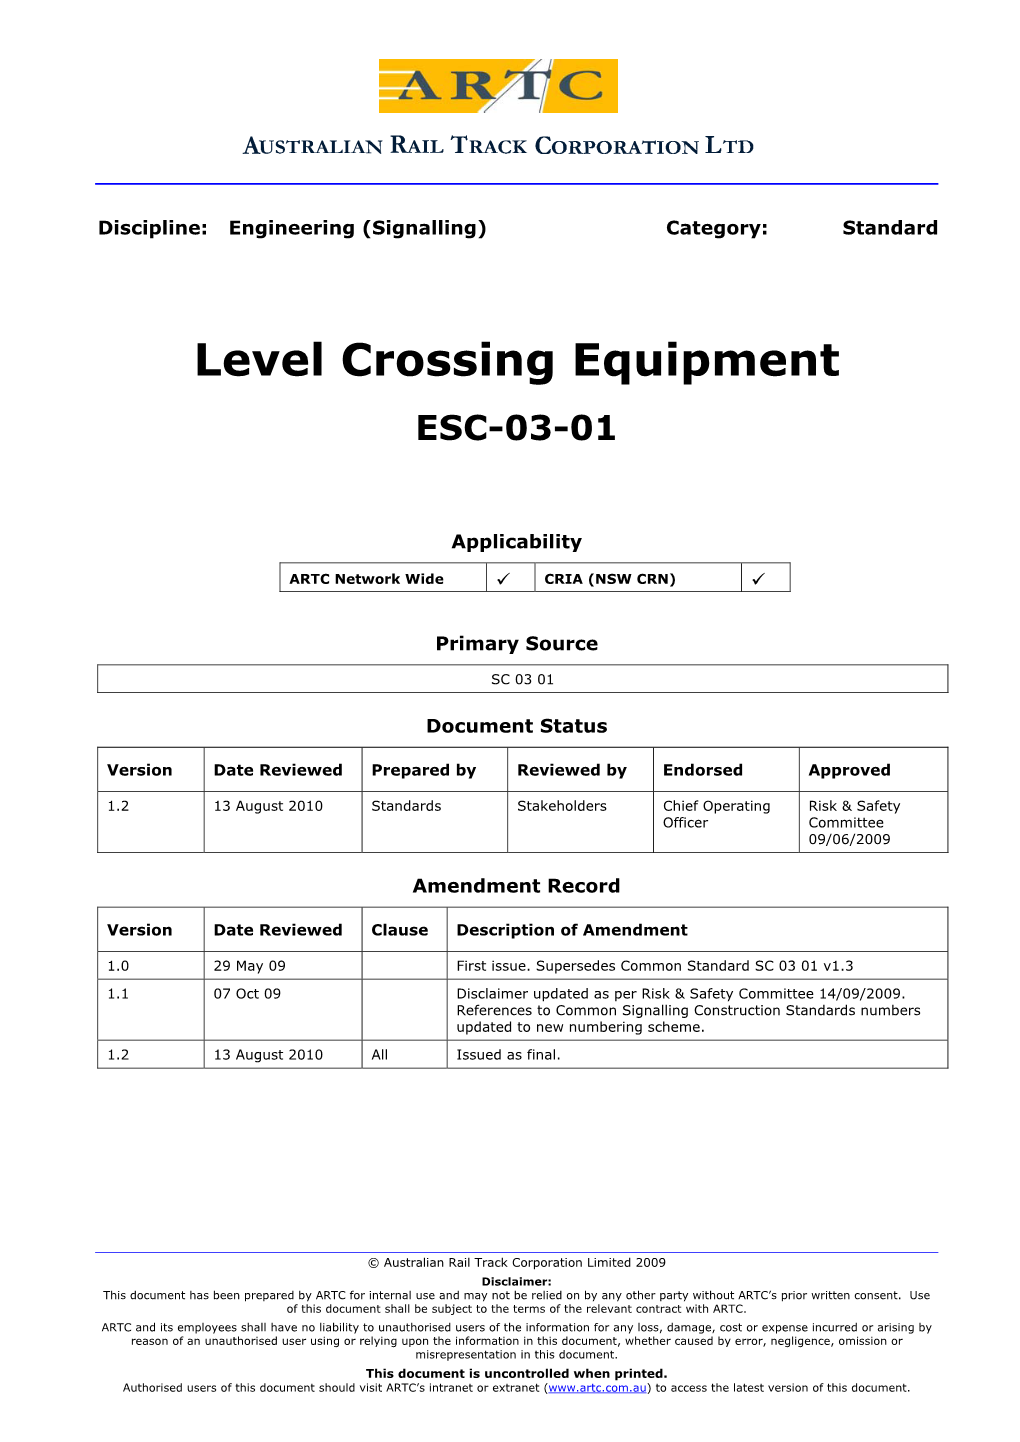 Level Crossing Equipment ESC-03-01